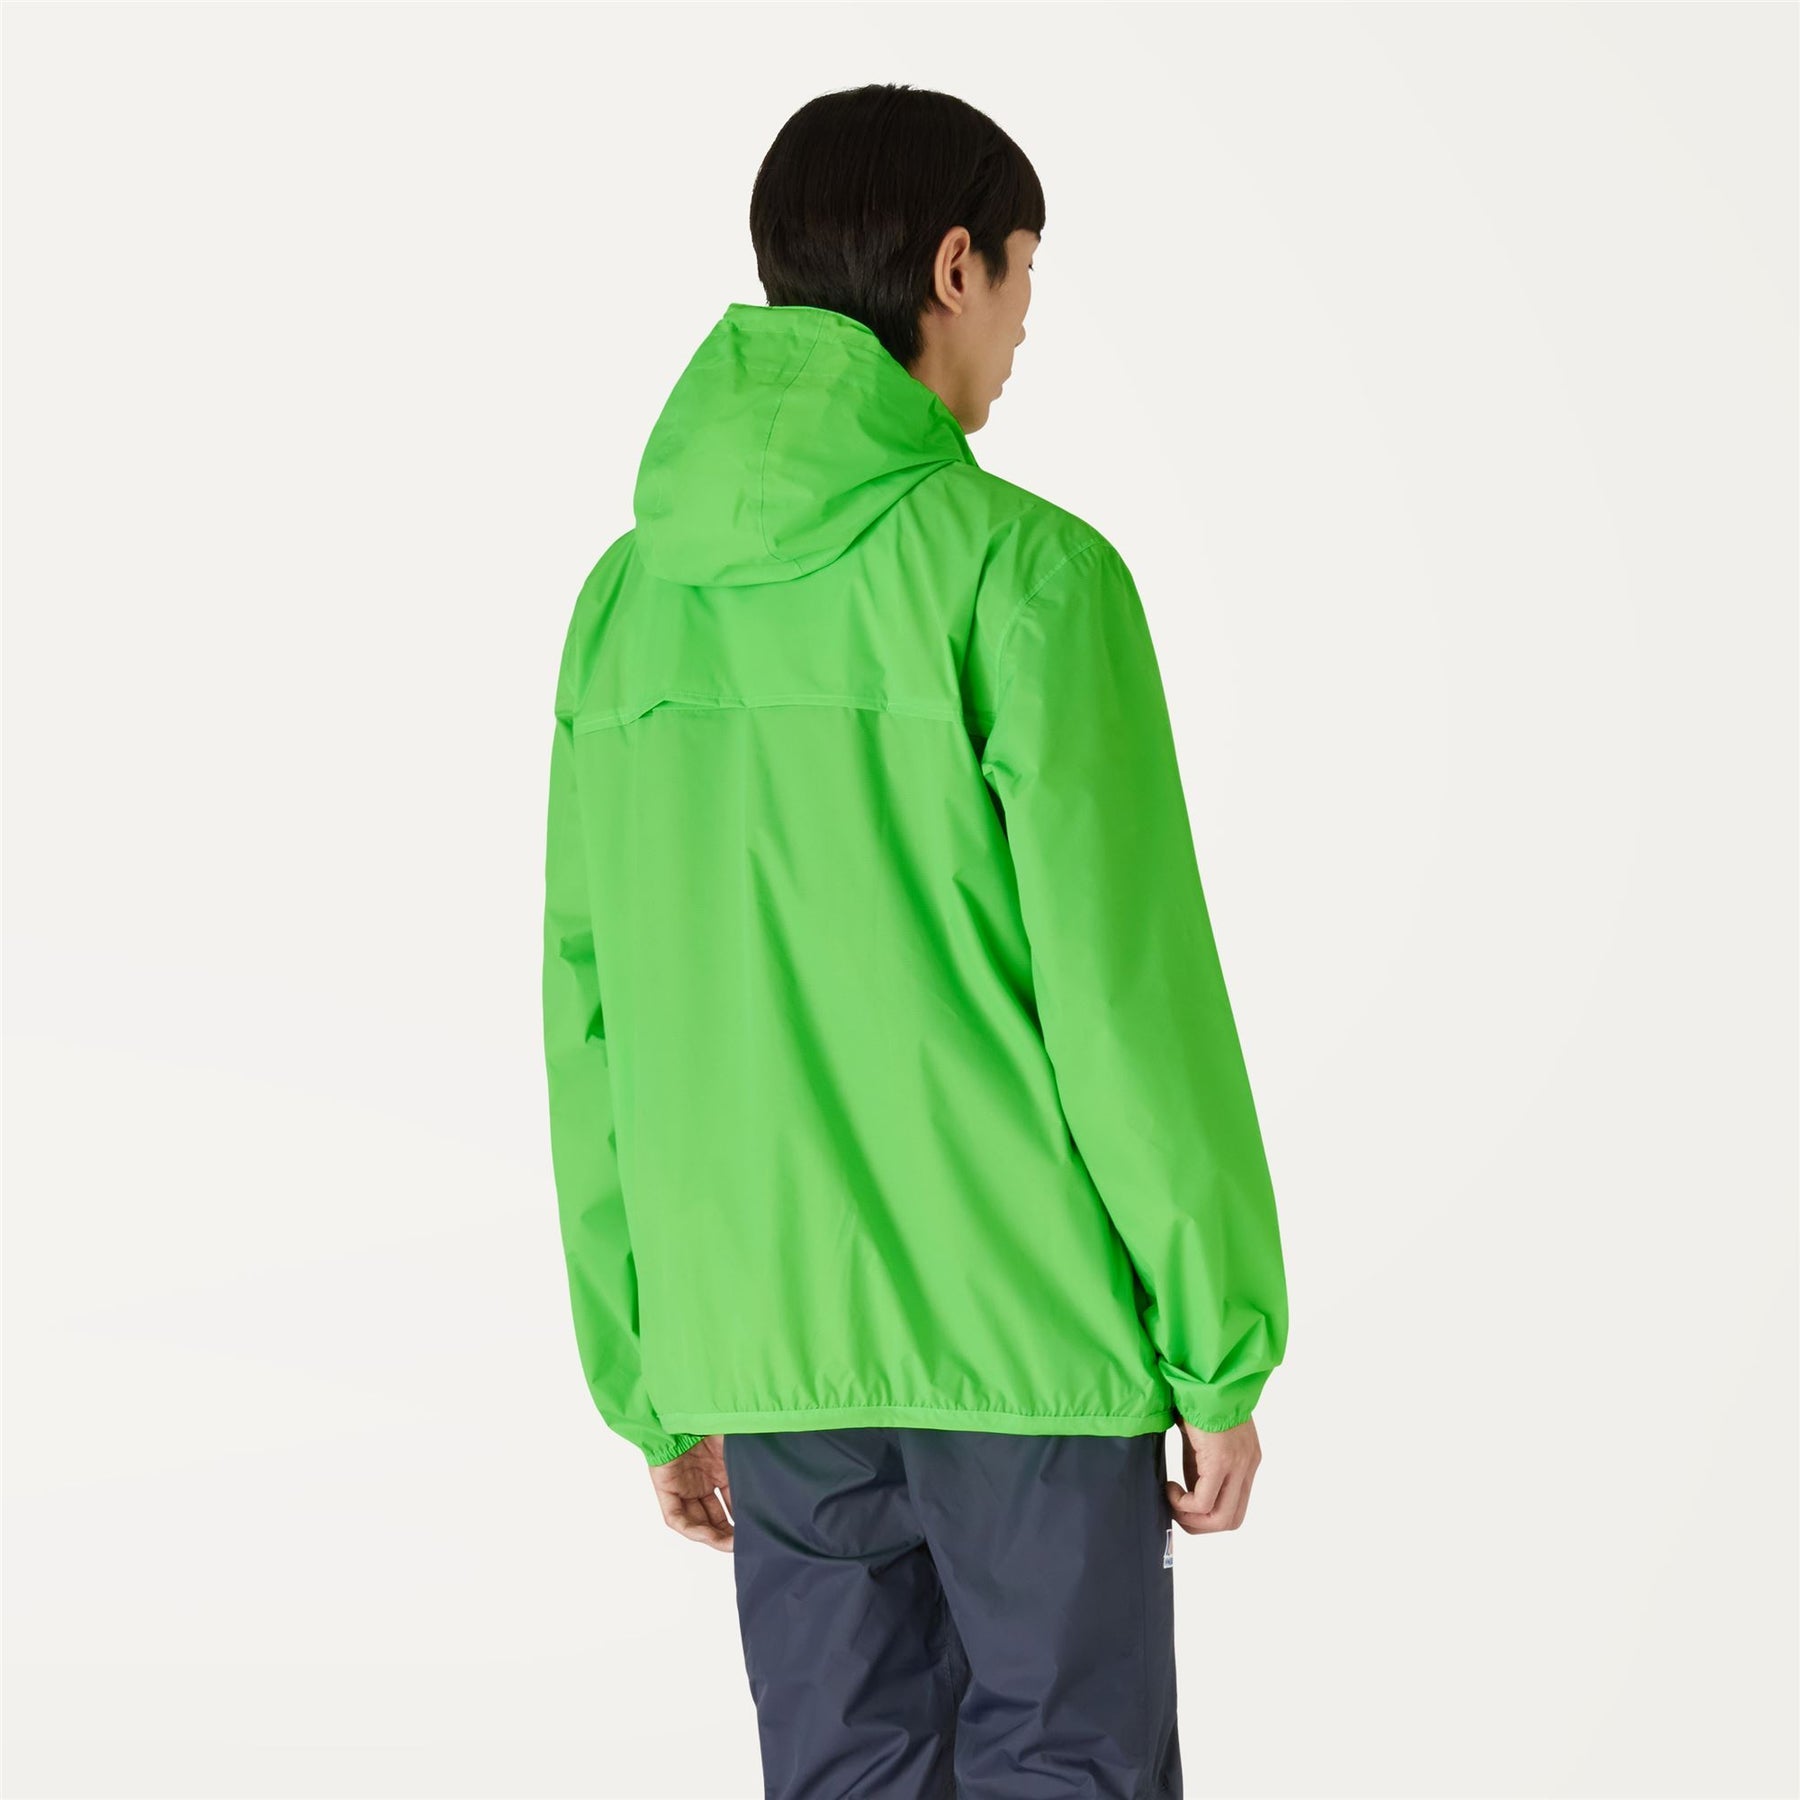 Claude - Unisex Packable Full Zip Waterproof  Rain Jacket in Green Classic